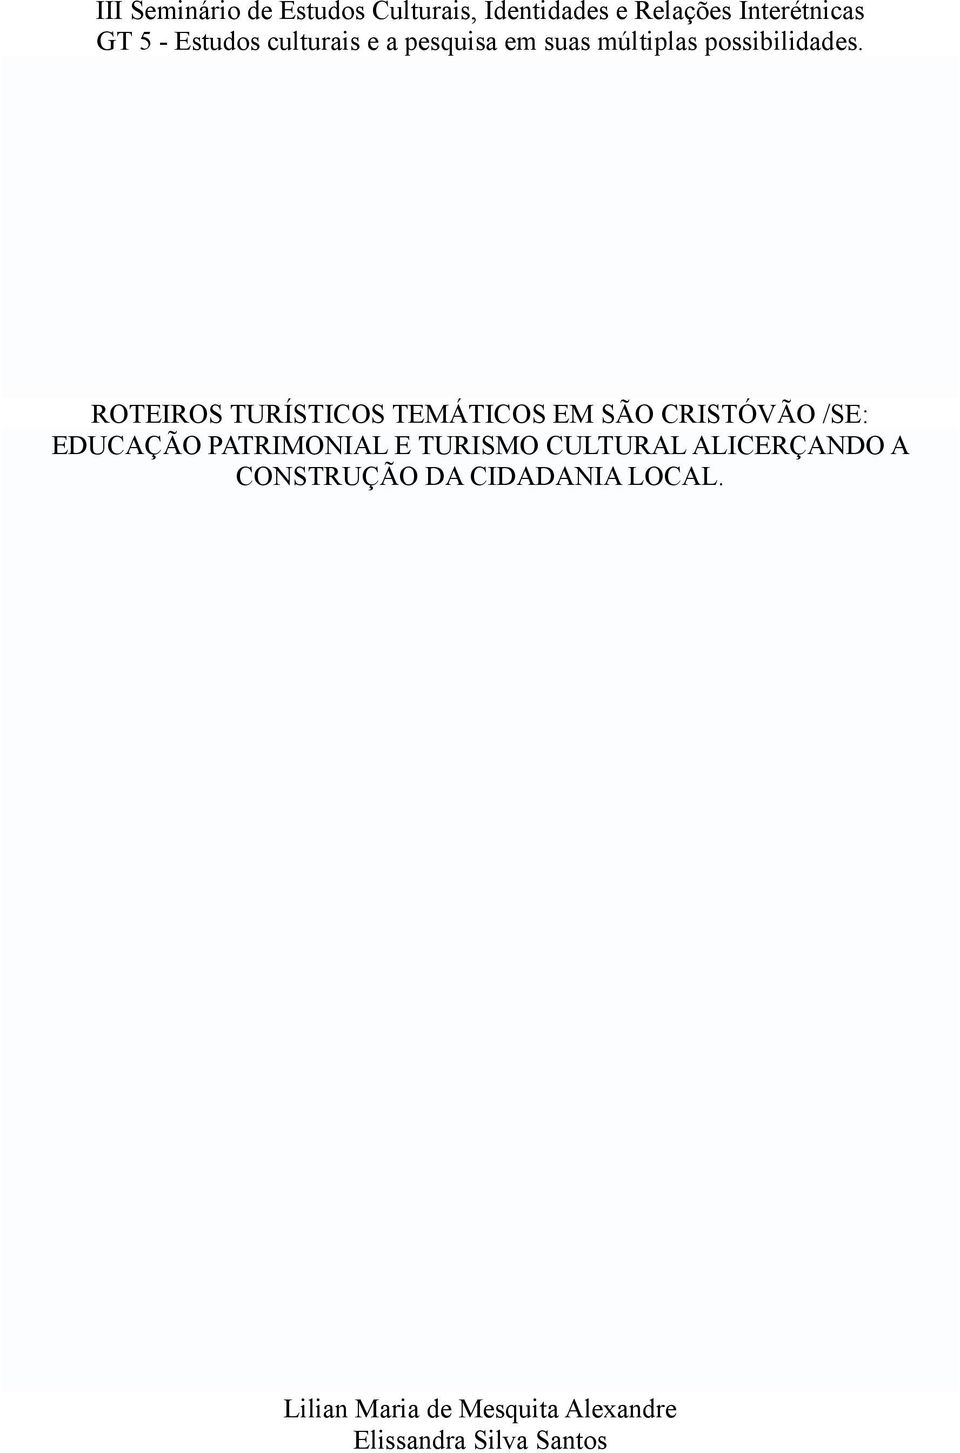 ROTEIROS TURÍSTICOS TEMÁTICOS EM SÃO CRISTÓVÃO /SE: EDUCAÇÃO PATRIMONIAL E TURISMO